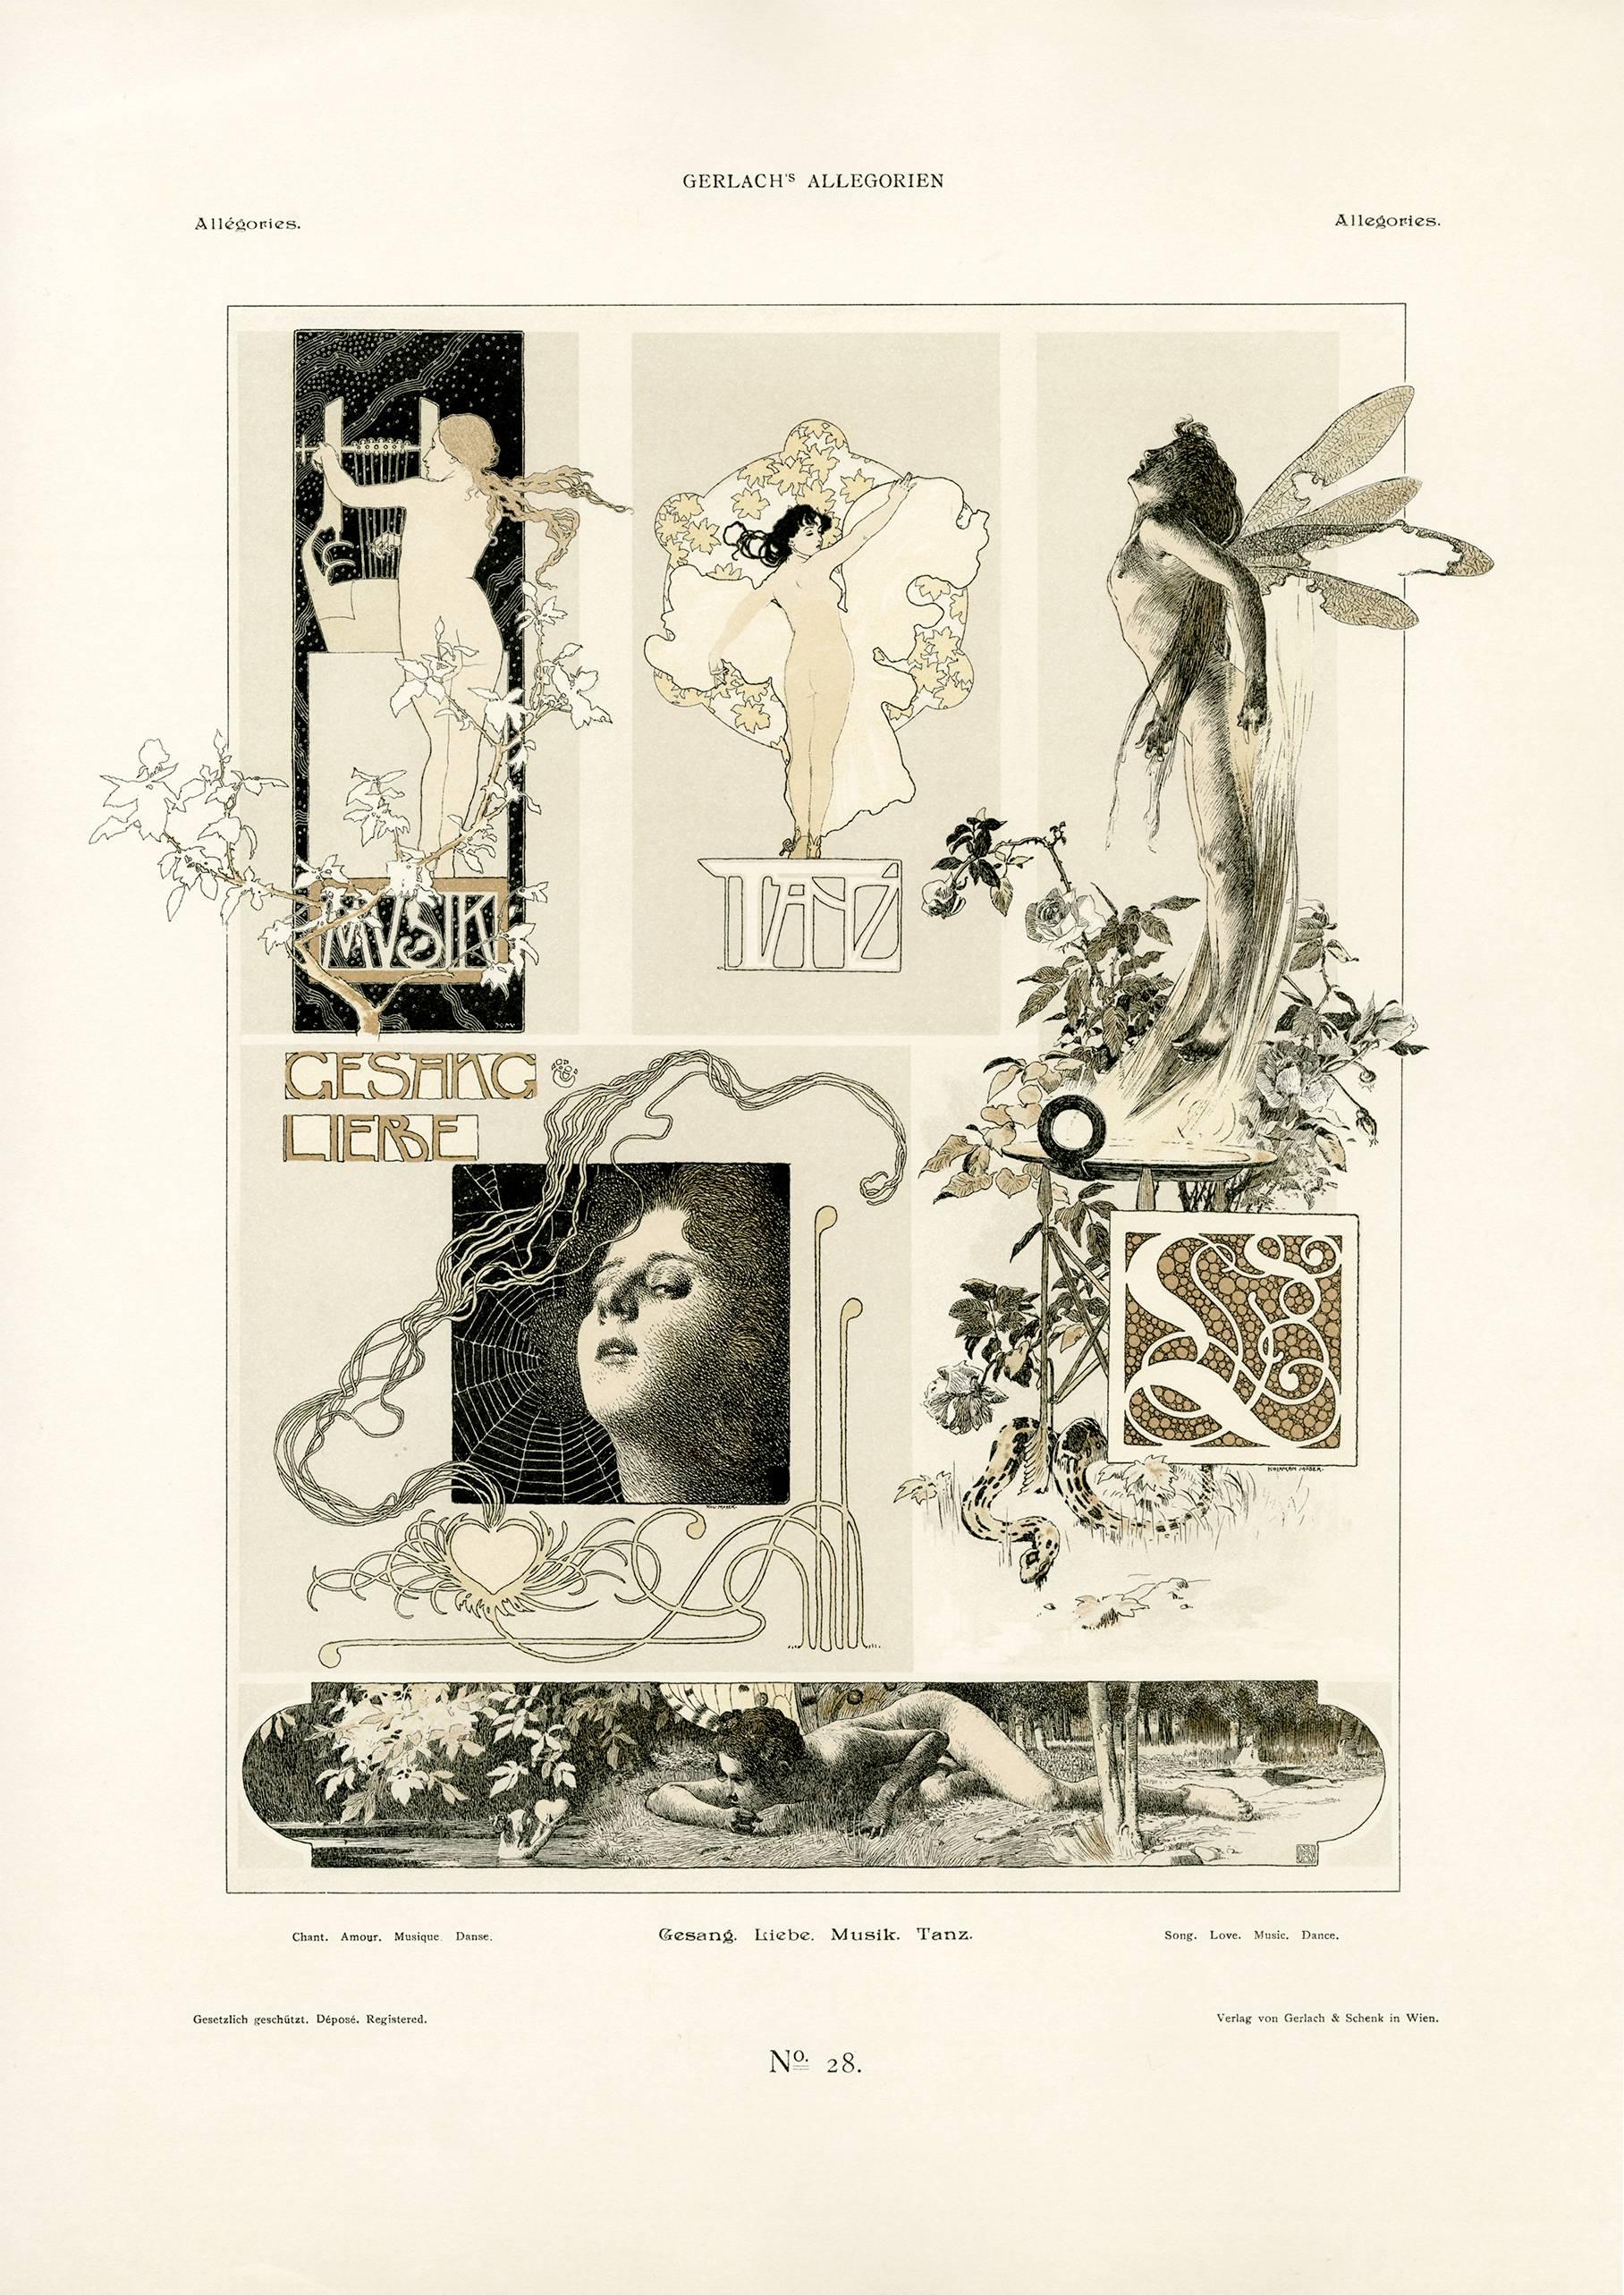 Koloman Moser Figurative Print - Gerlach's Allegorien Plate #20: "Song, Love, Music, Dance" Lithograph